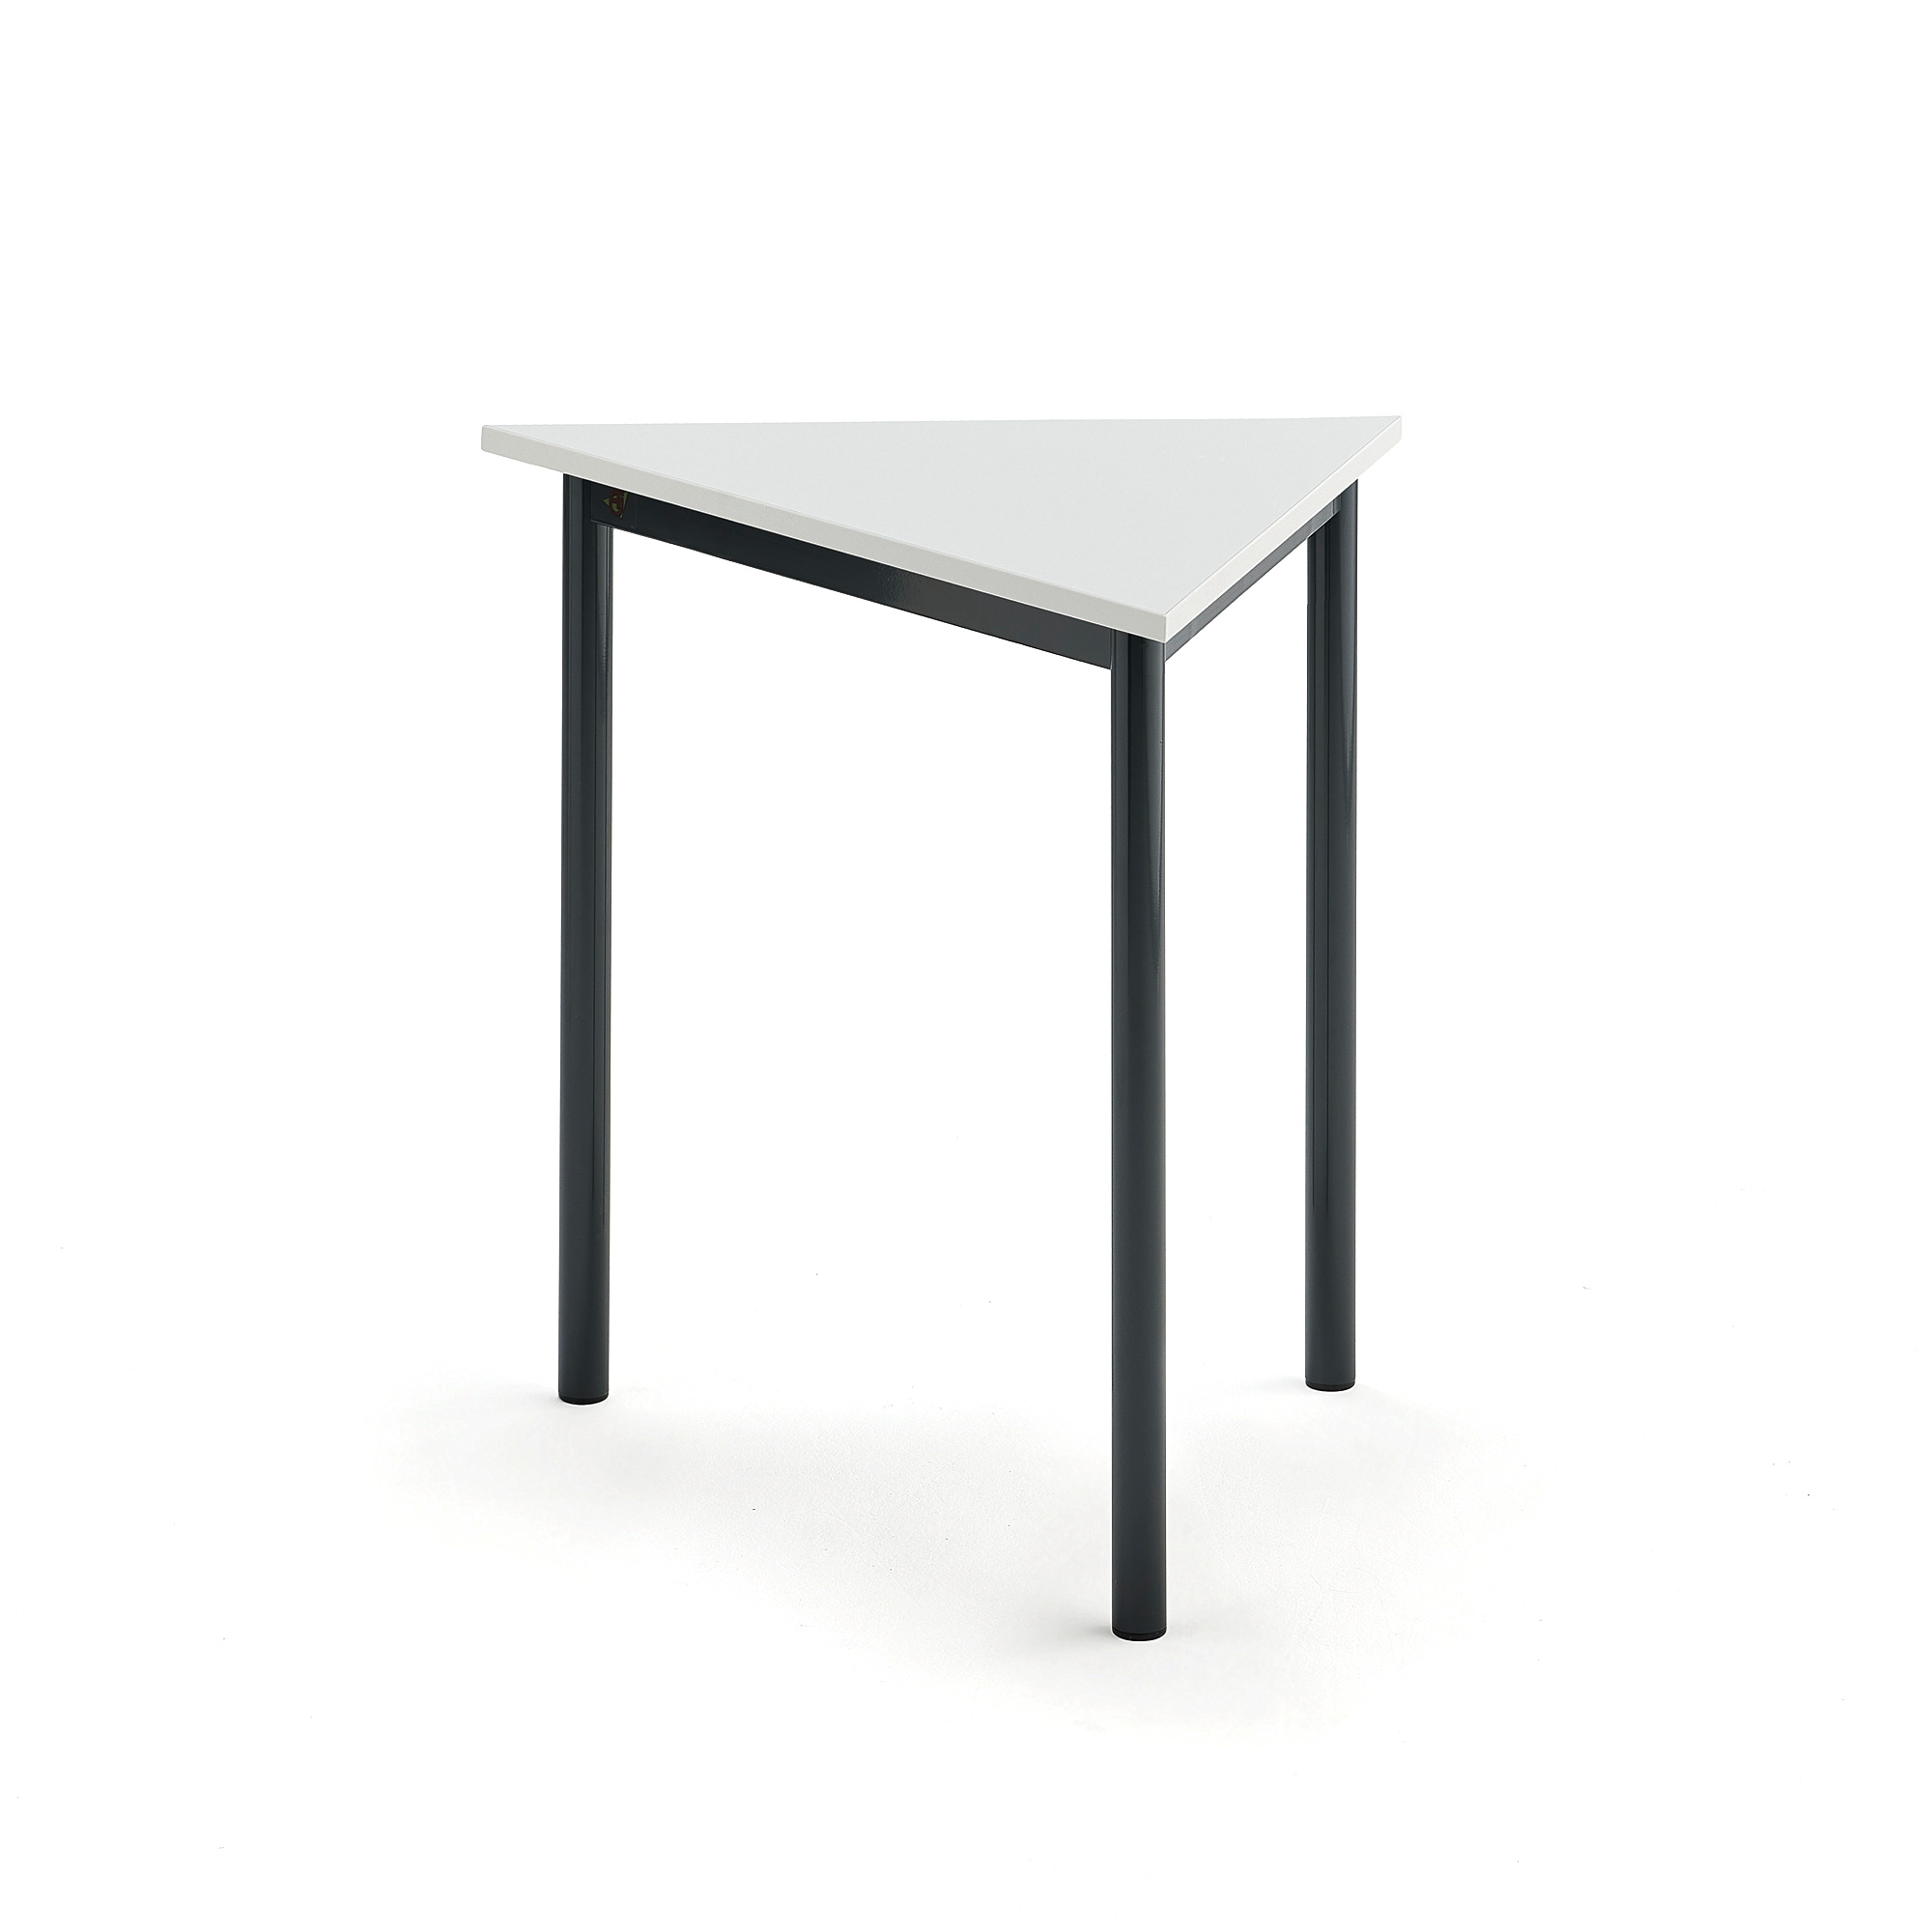 Stůl SONITUS TRIANGEL, 800x700x720 mm, antracitově šedé nohy, HPL deska tlumící hluk, bílá